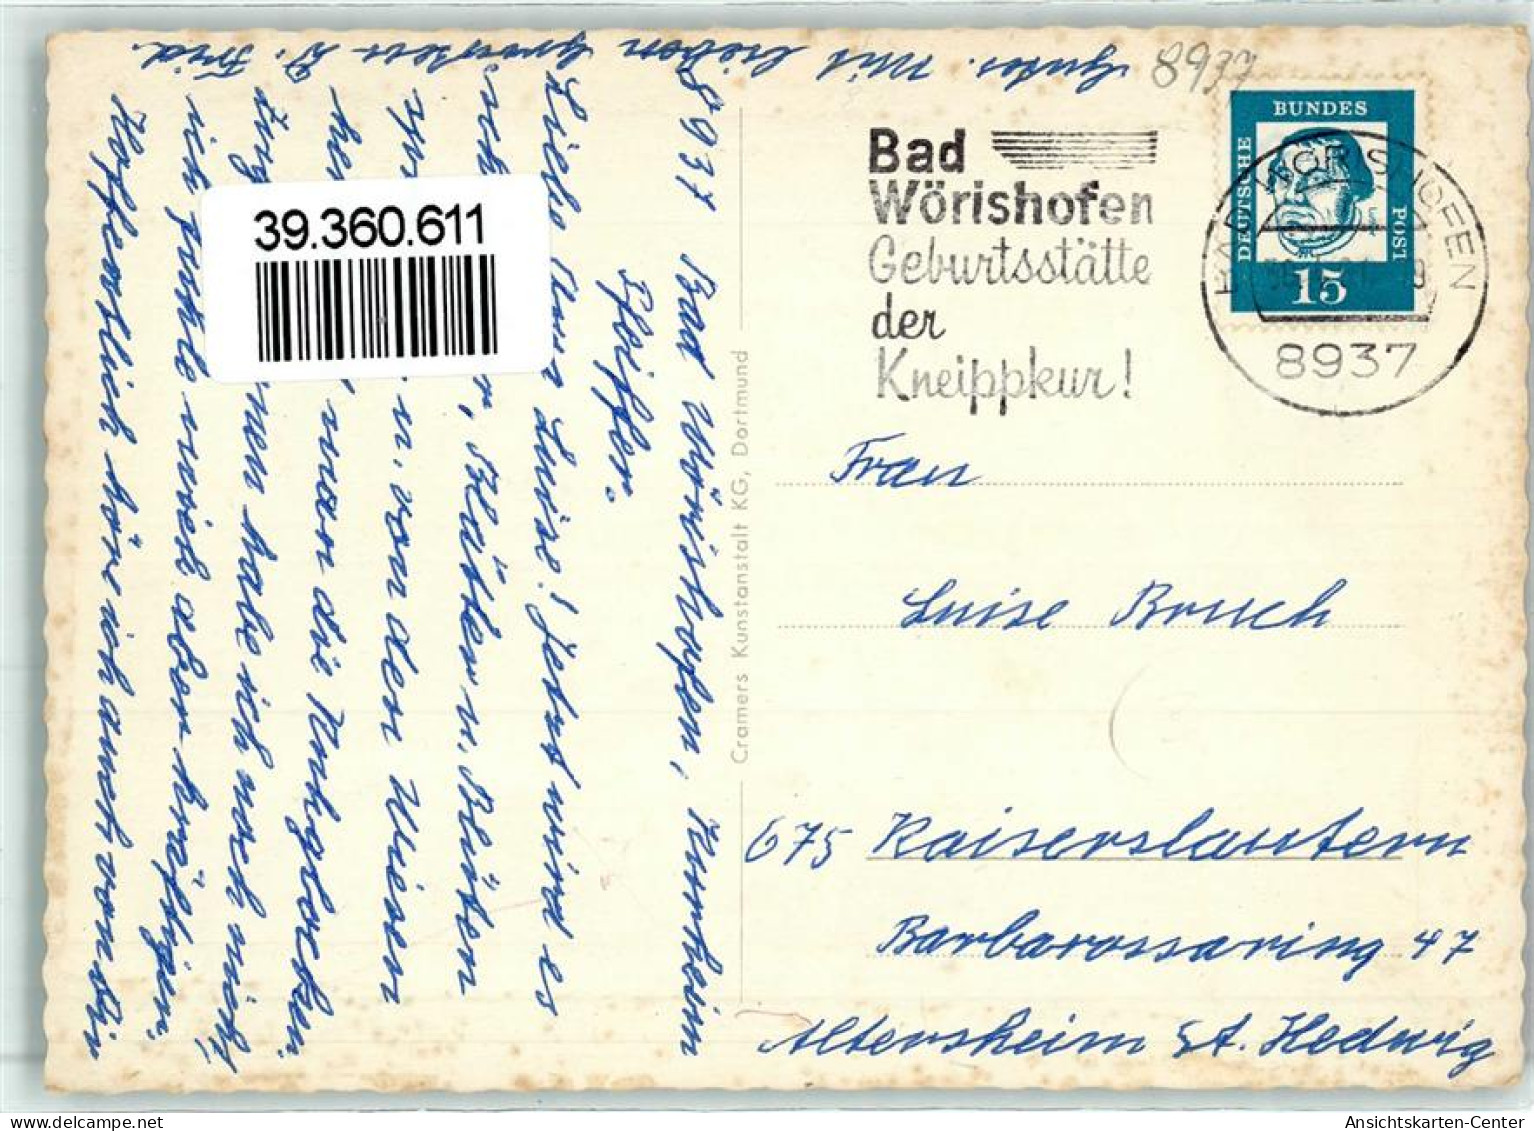 39360611 - Bad Woerishofen - Bad Woerishofen